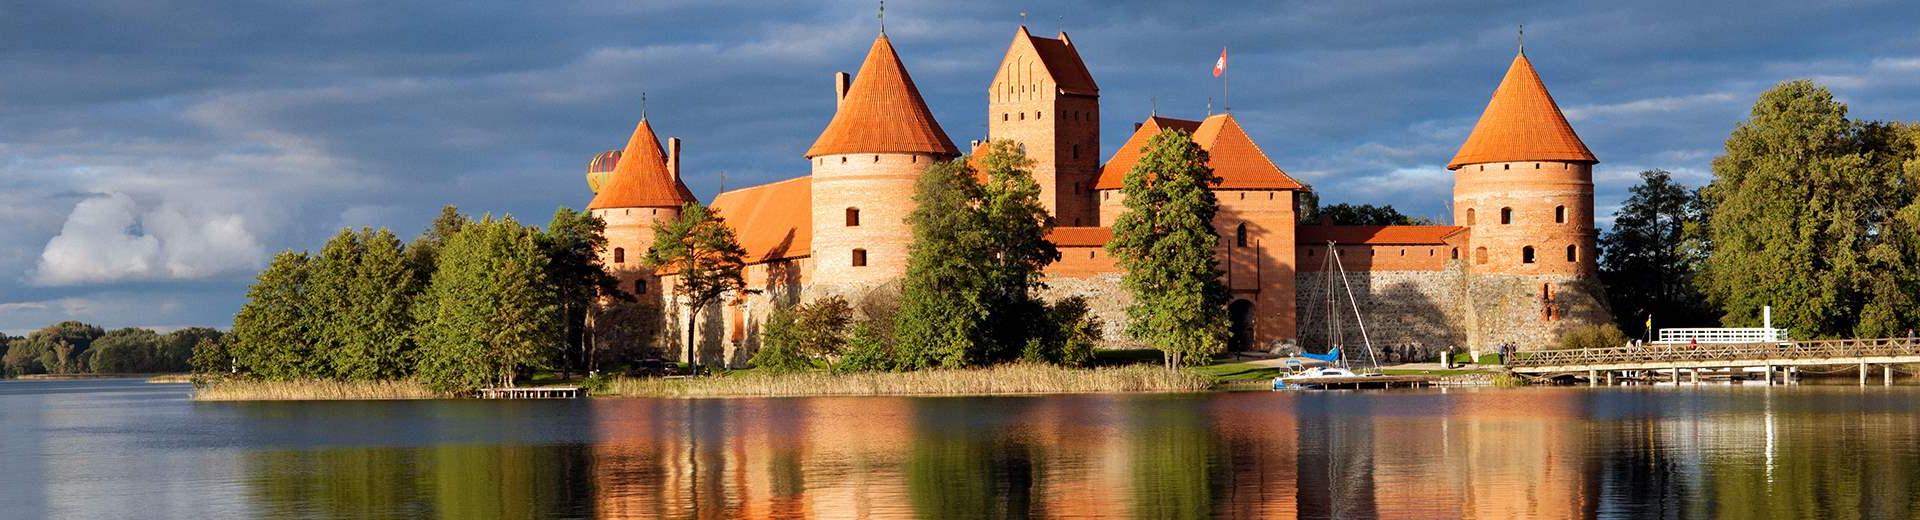 Ferienwohnungen & Ferienhäuser für Urlaub in Litauen - Casamundo